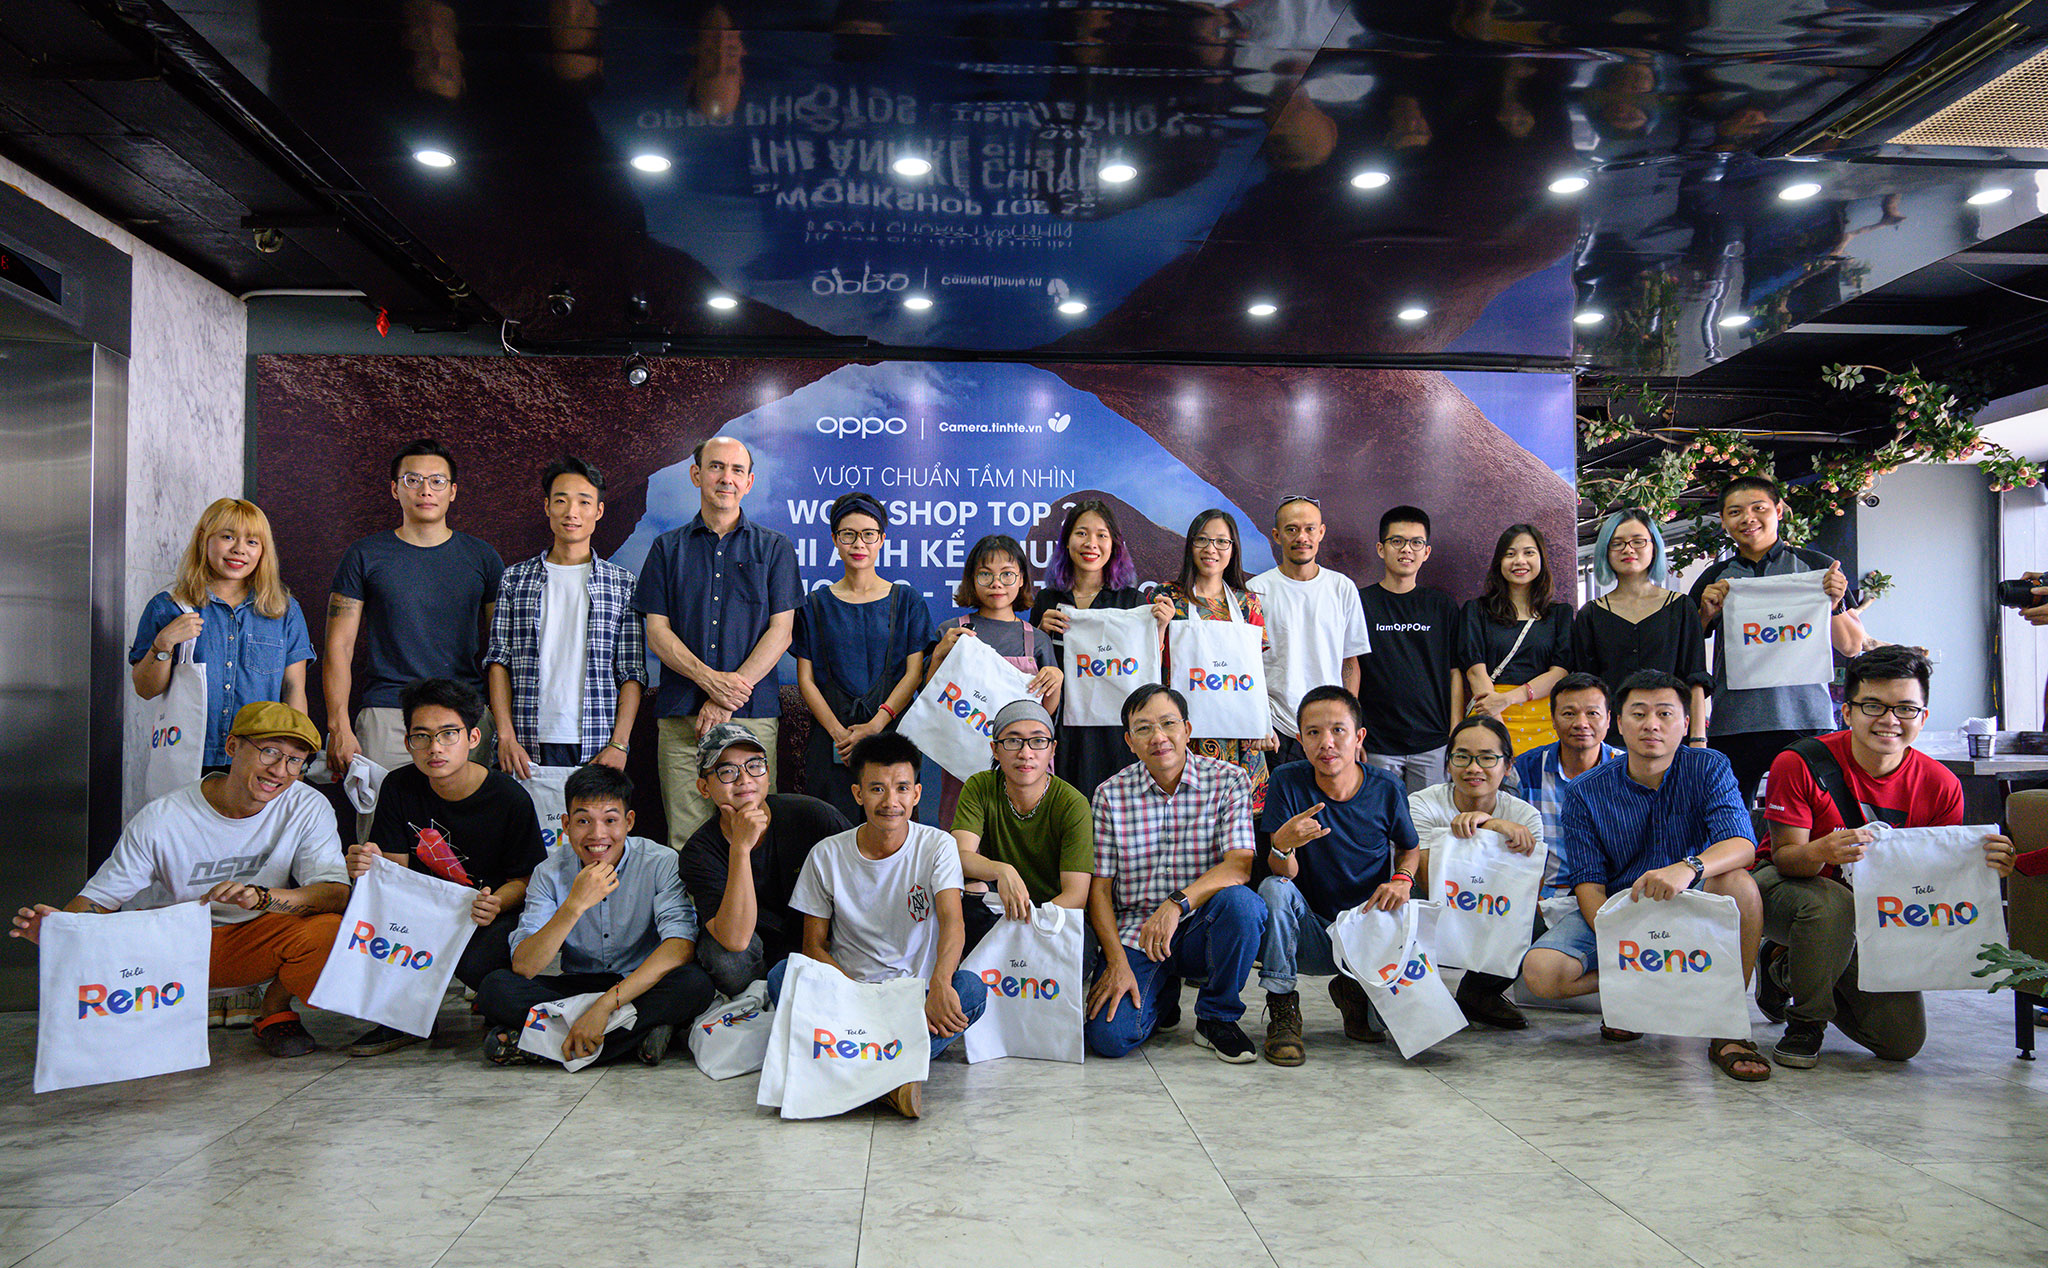 Tổng kết vòng 2 Cuộc thi ảnh kể chuyện Oppo Photos & Tinhte Photos tại Hà Nội 6-7/07